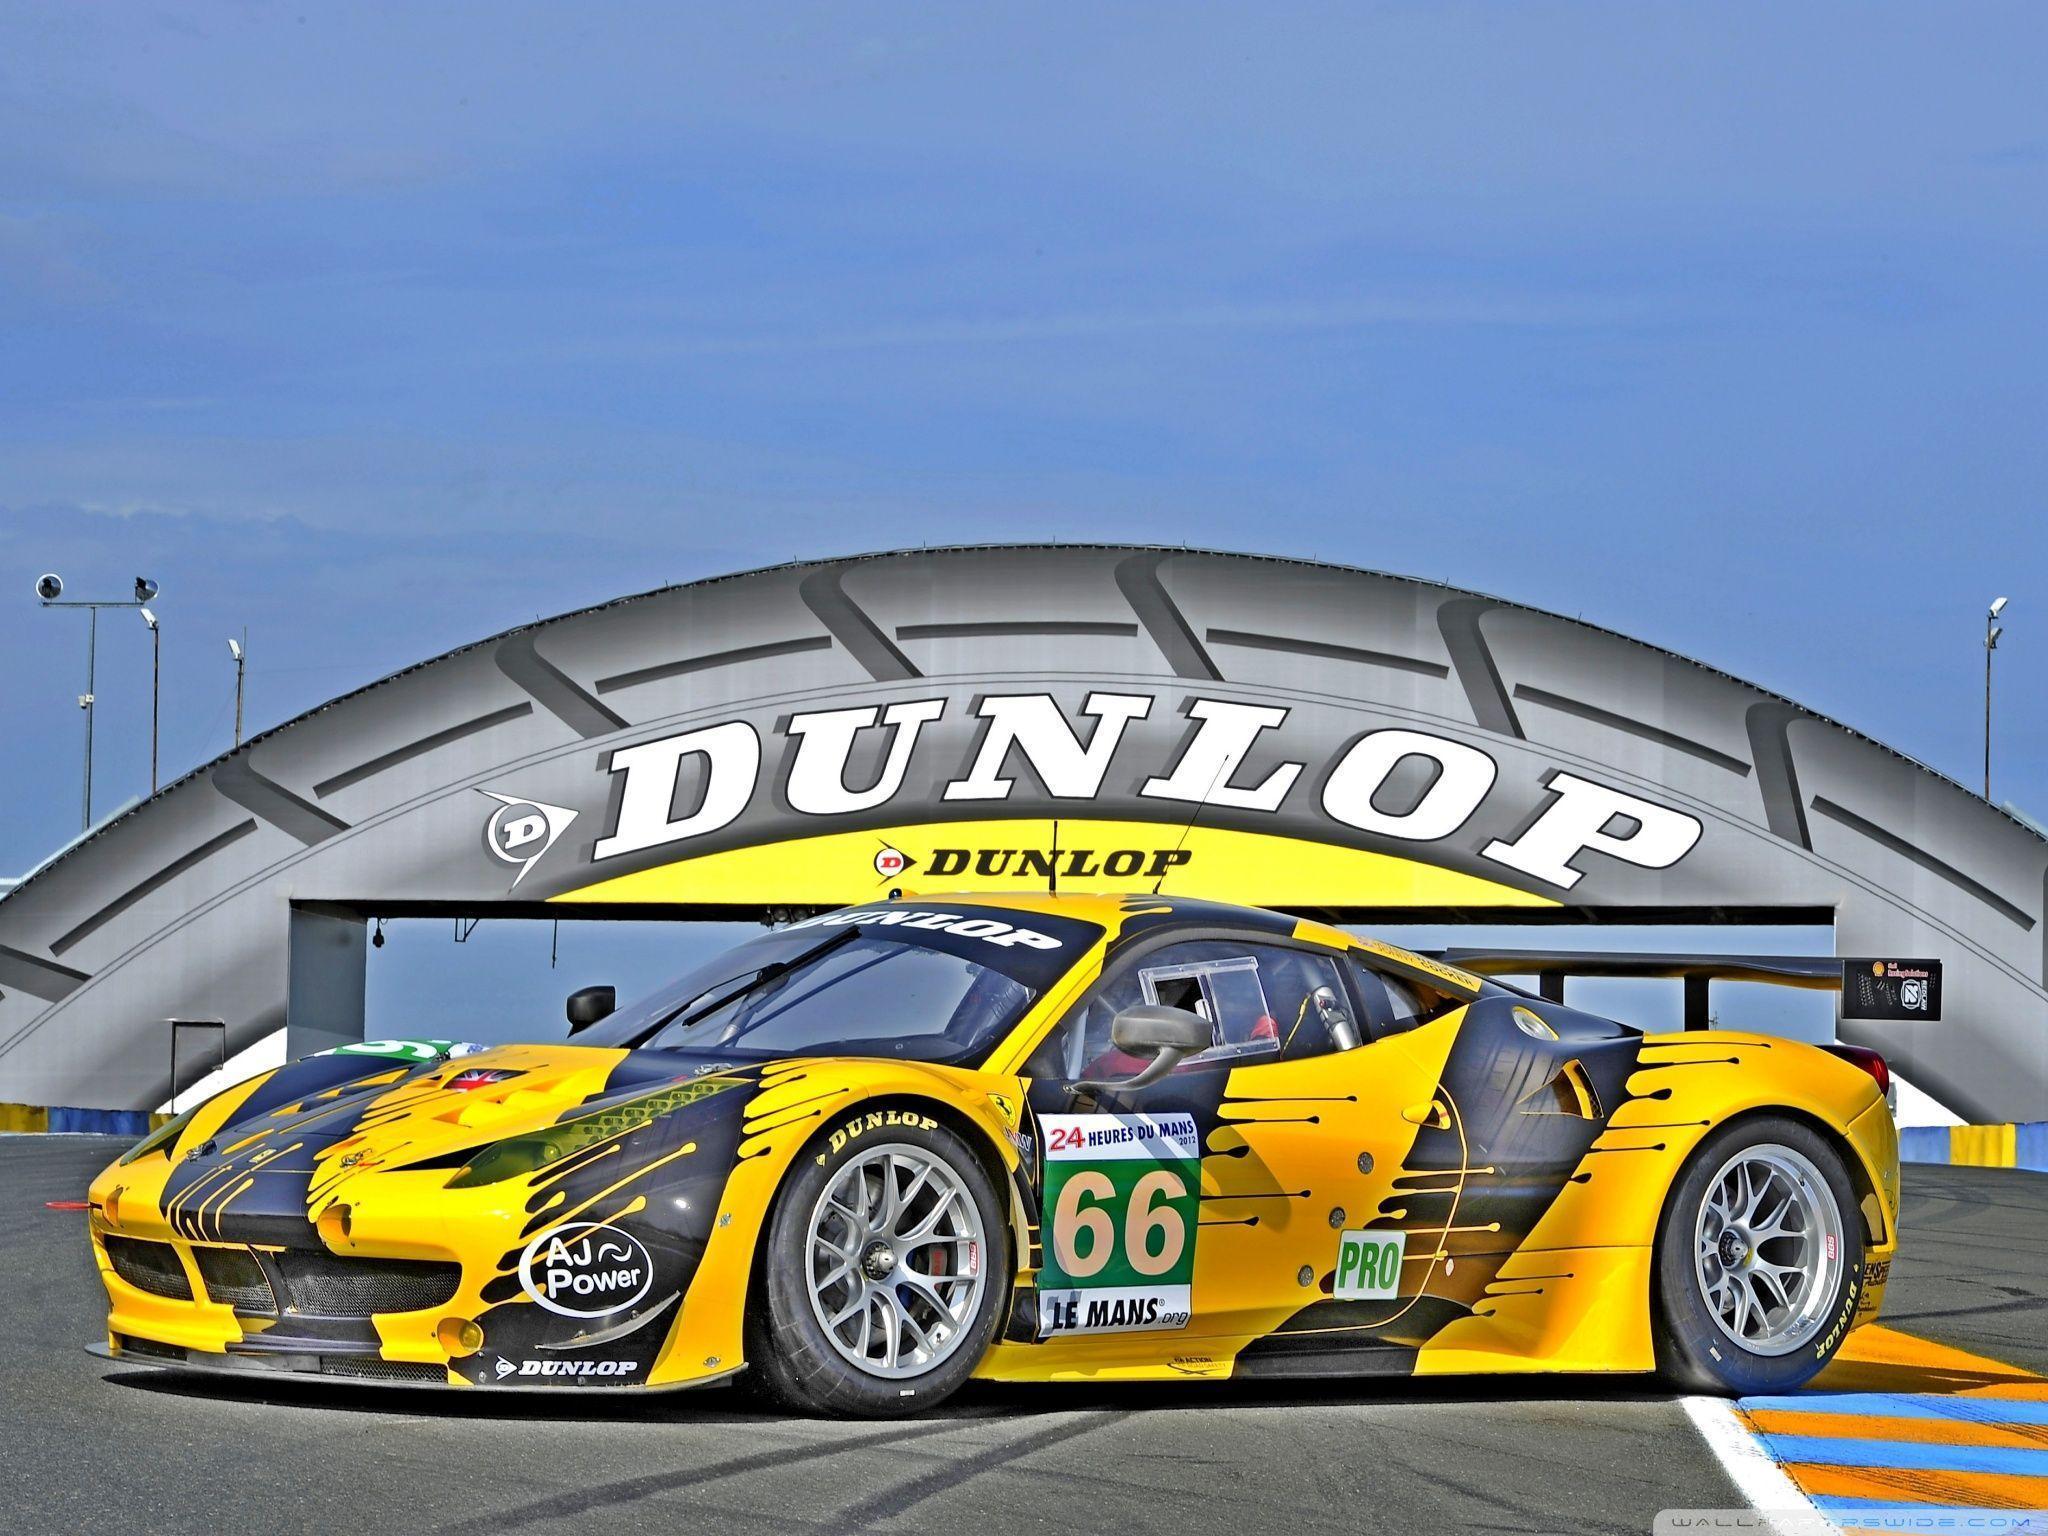 Dunlop Le Mans HD desktop wallpaper, High Definition, Fullscreen